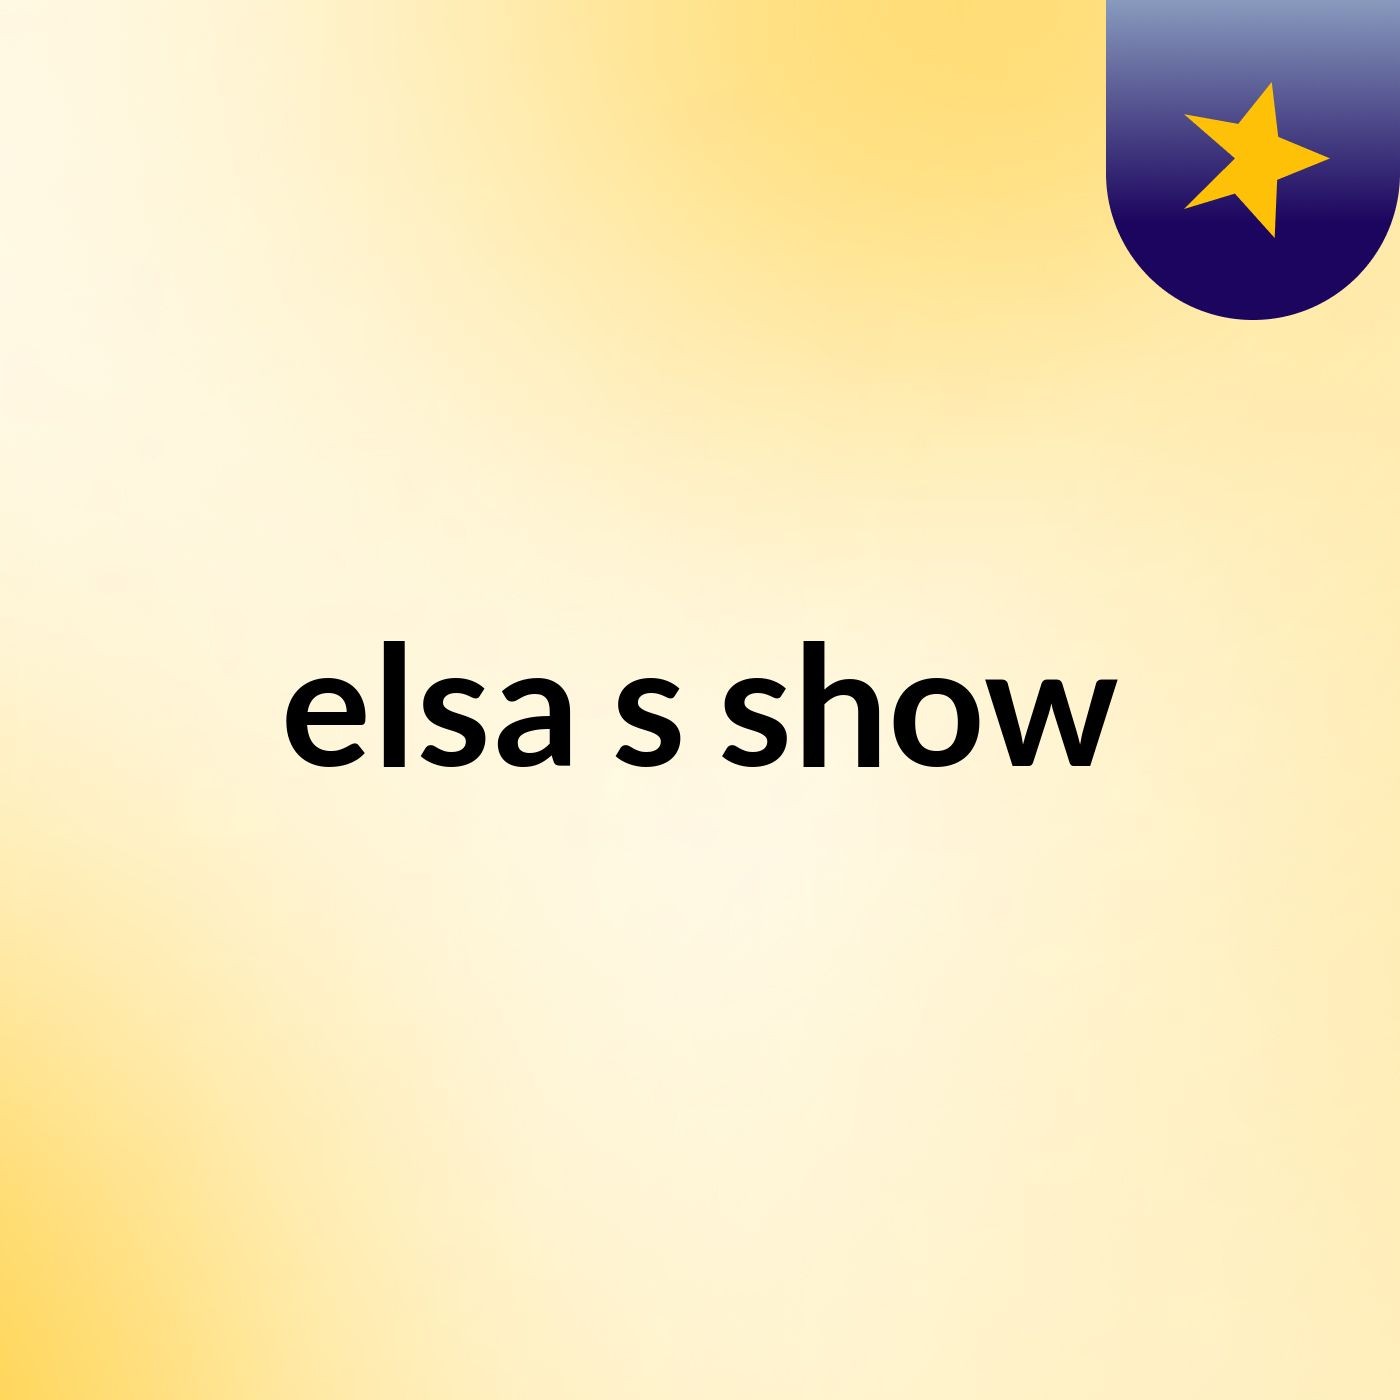 elsa's show